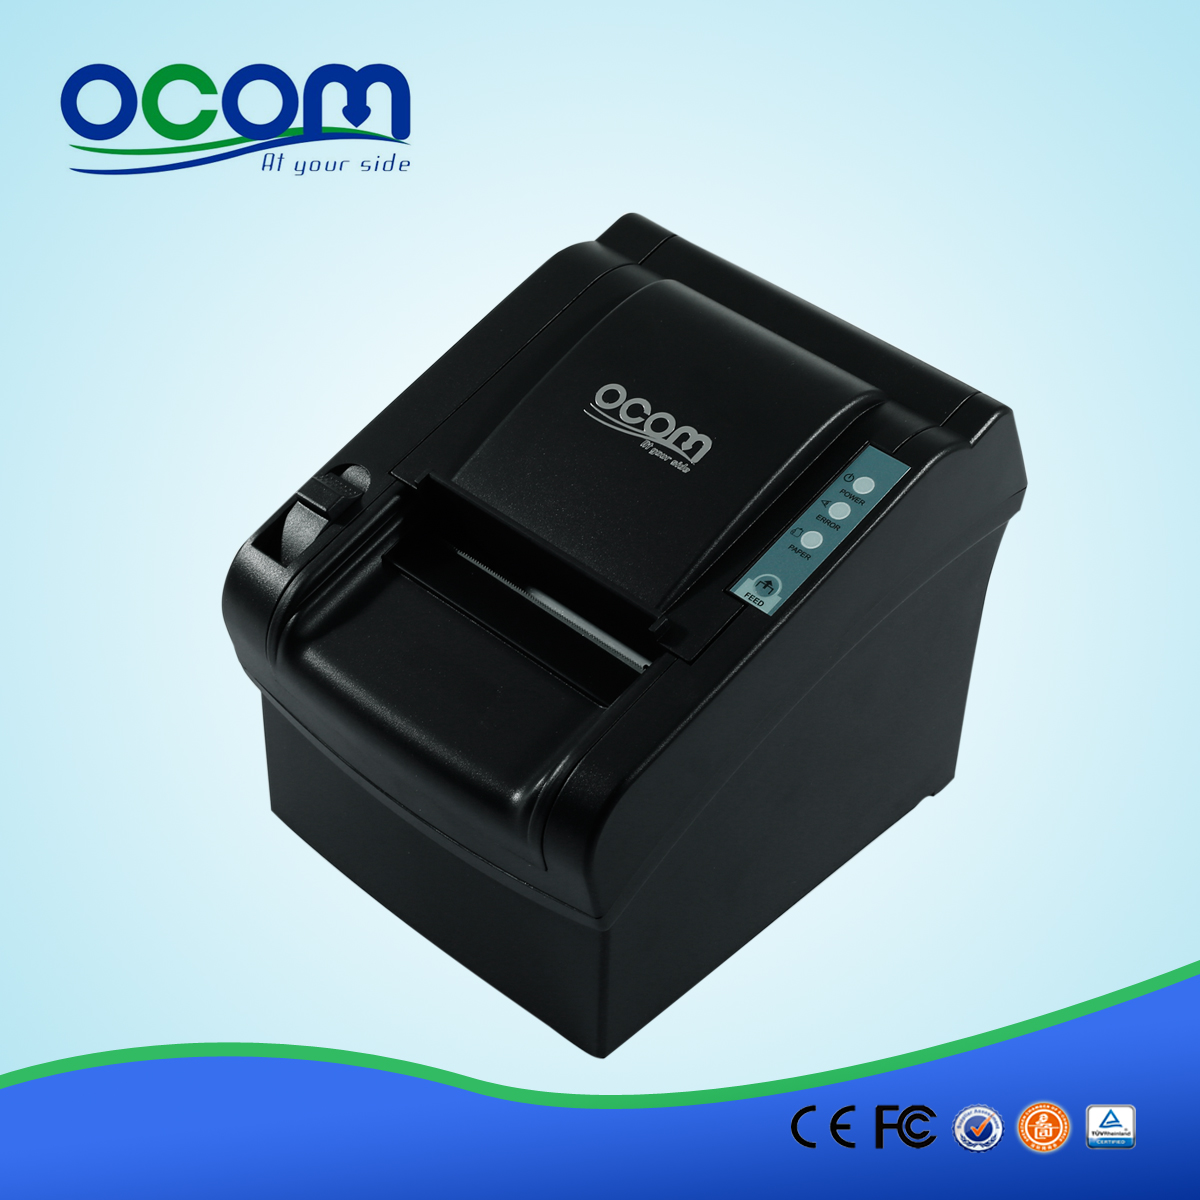 عالية الجودة 80MM الحرارية الطابعة نقاط البيع لاستلام (OCPP-802)